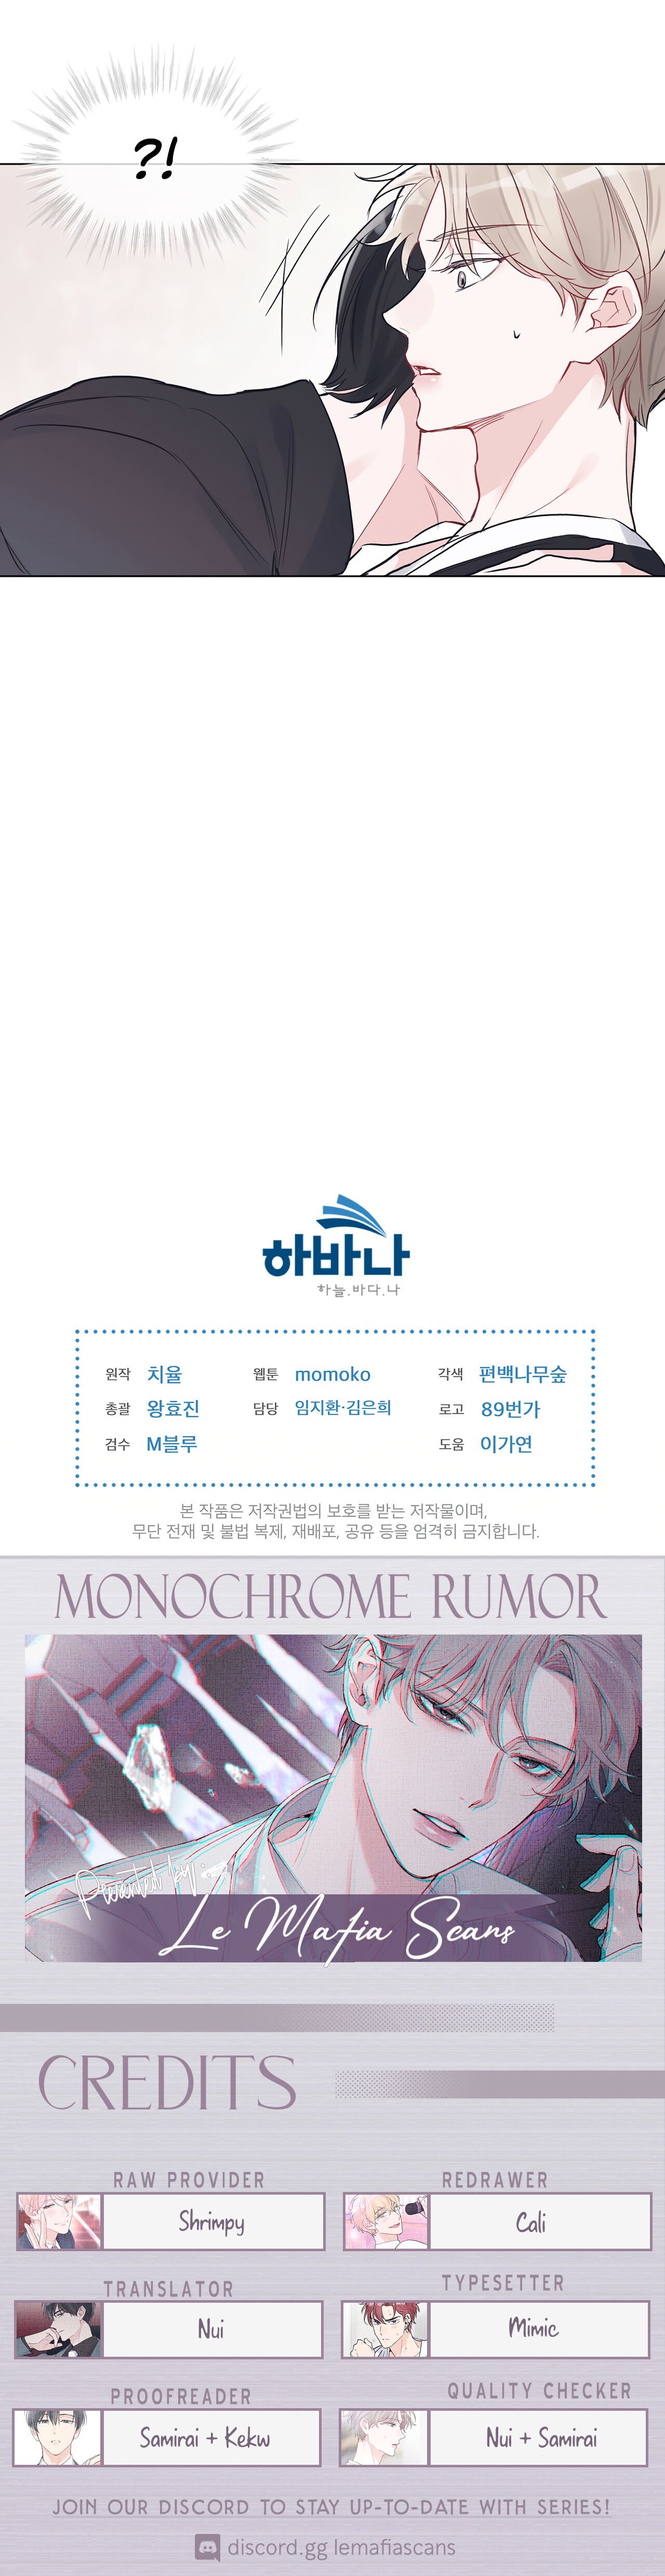 Monochrome Rumor chapter 5